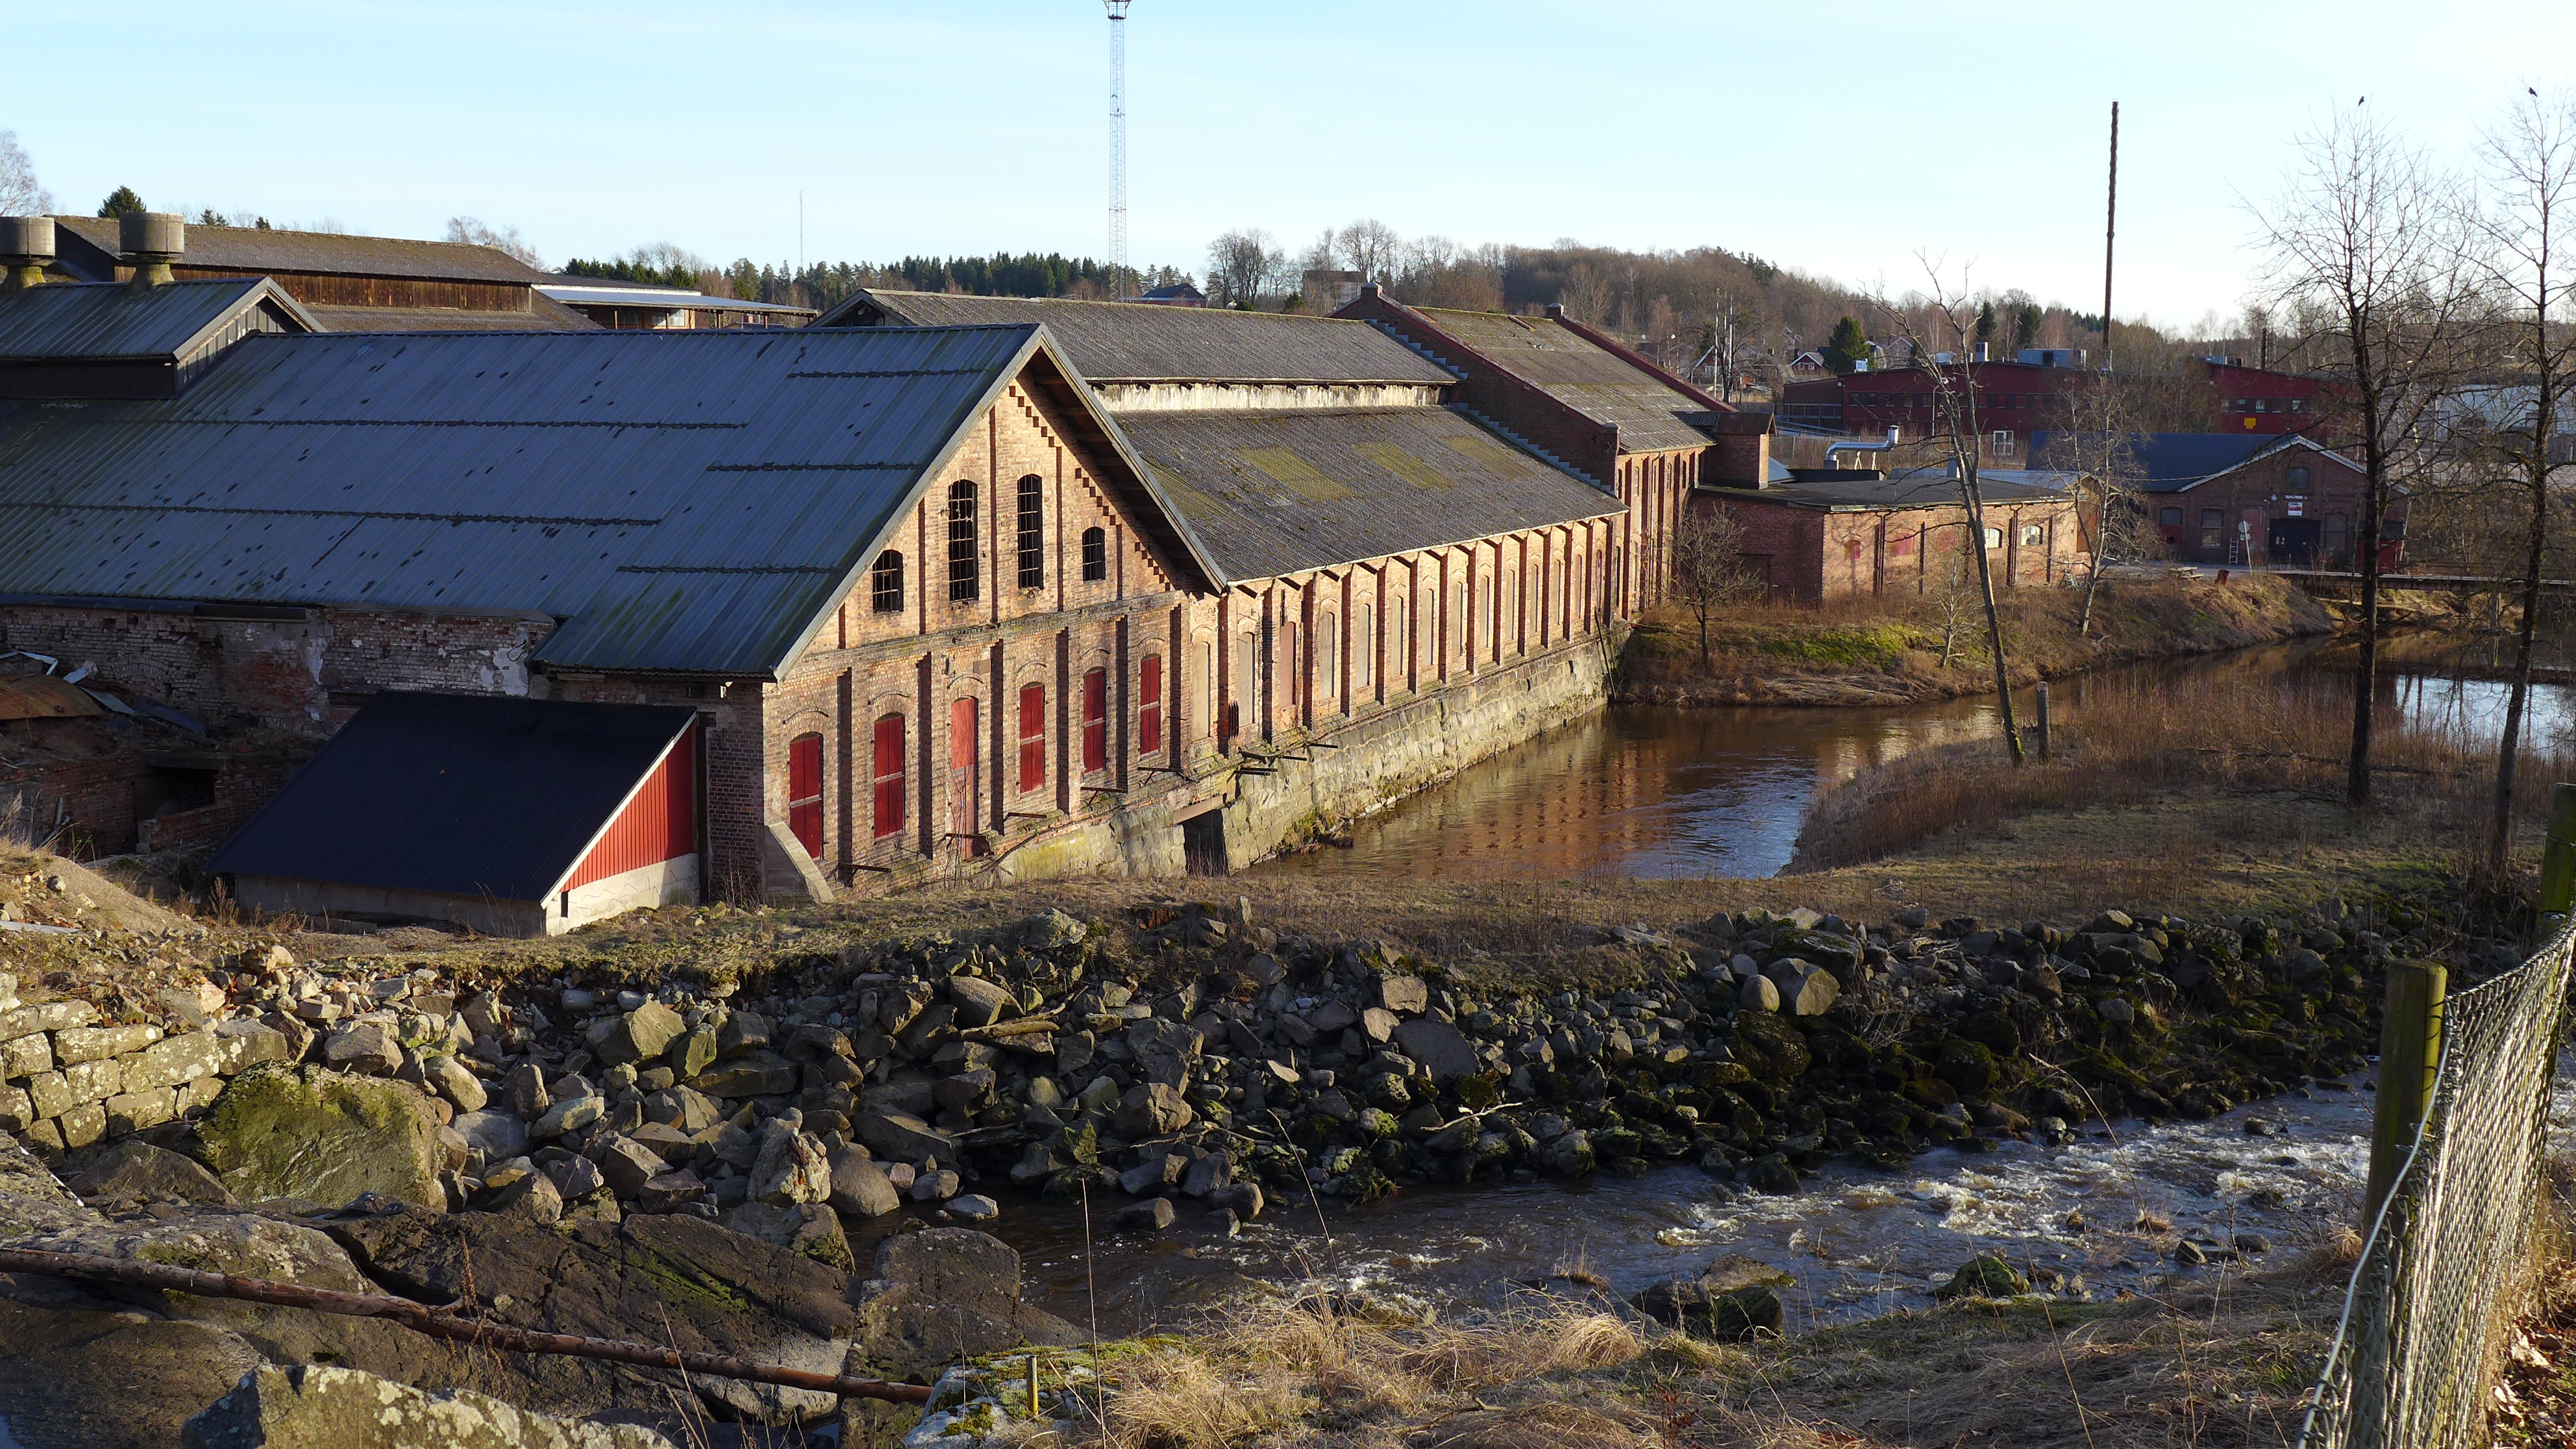 Ödeborgs bruks aktiebolag grundades 1898. Redan 1975 utpekades bruksområdet som en kulturhistoriskt värdefull miljö i en kulturhistorisk utredning framtagen av Färgelanda kommun. Den lilla utbyggnaden på fabriken inrymmer den nya turbinen. 